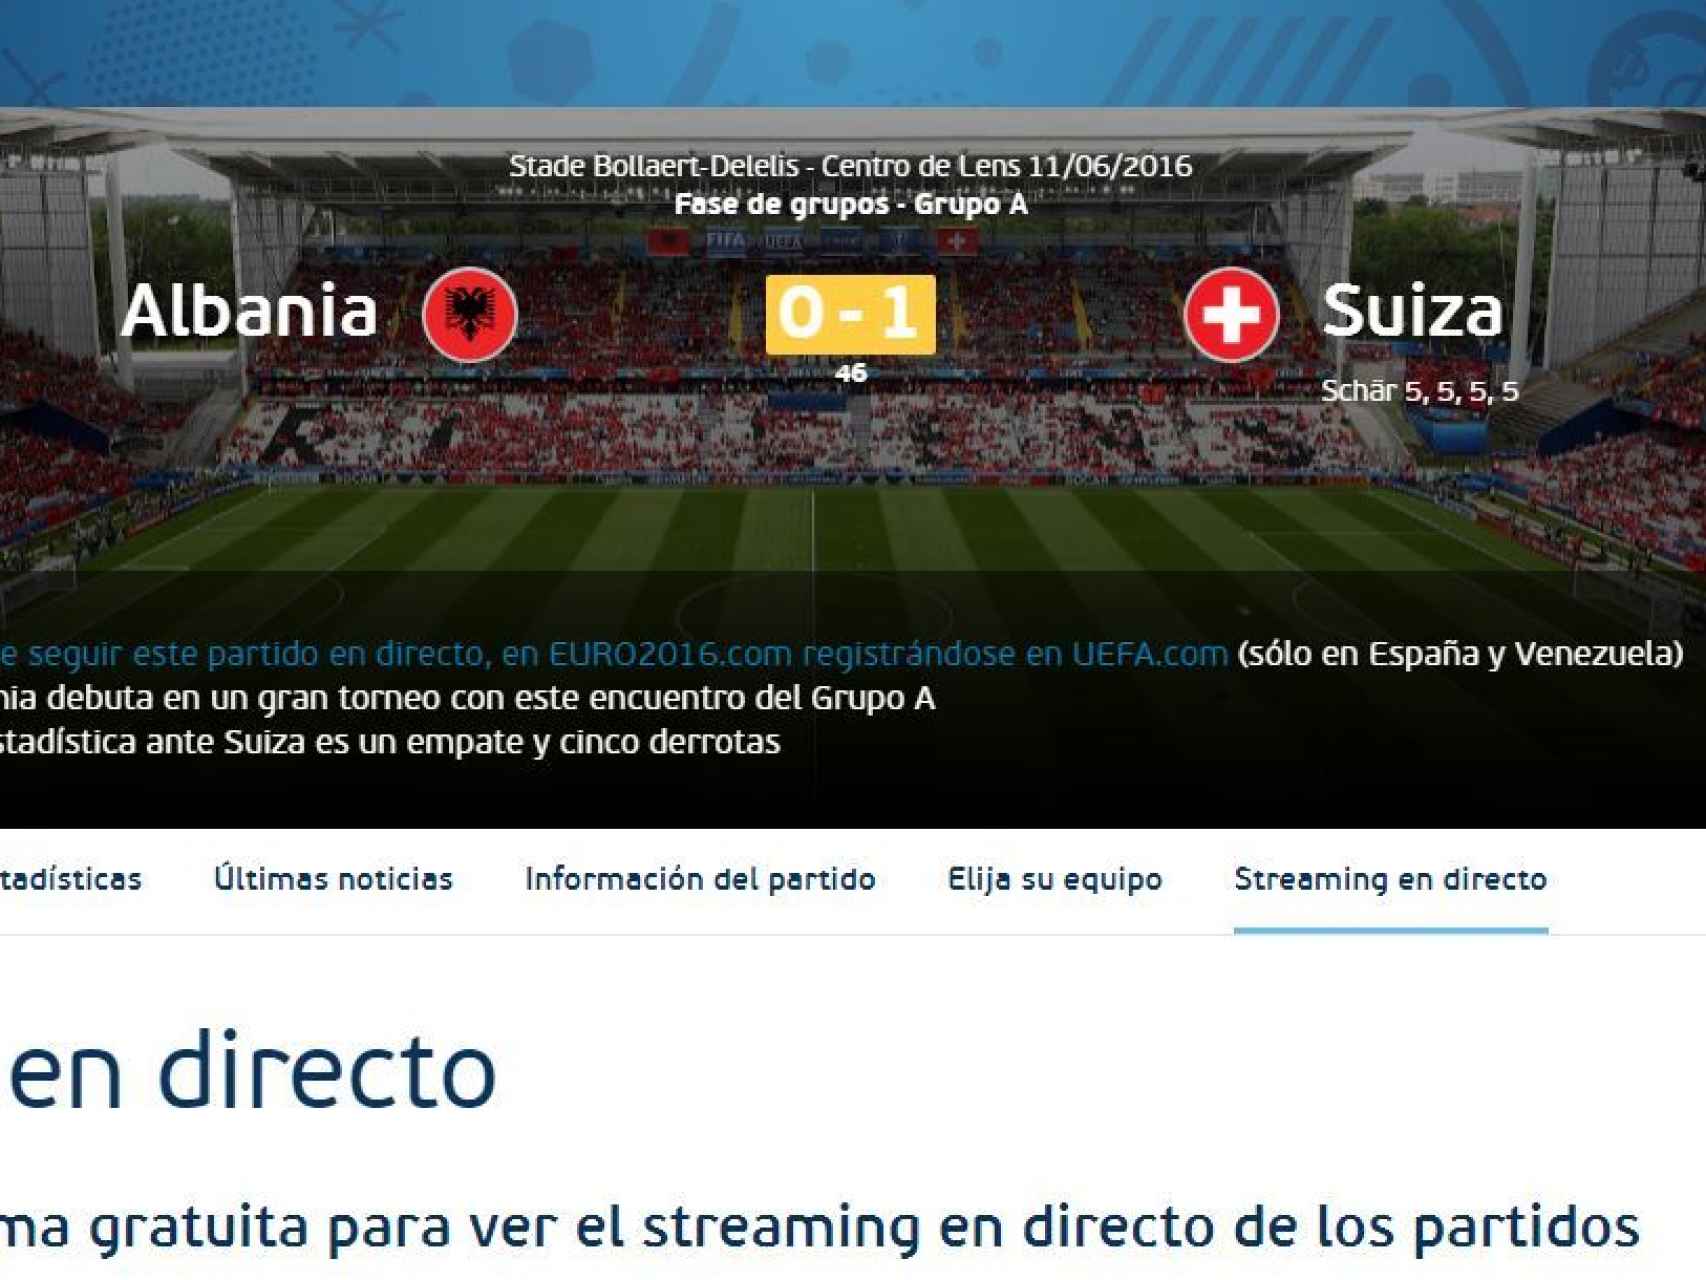 Captura de pantalla al comienzo de la segunda parte de la web de la UEFA.